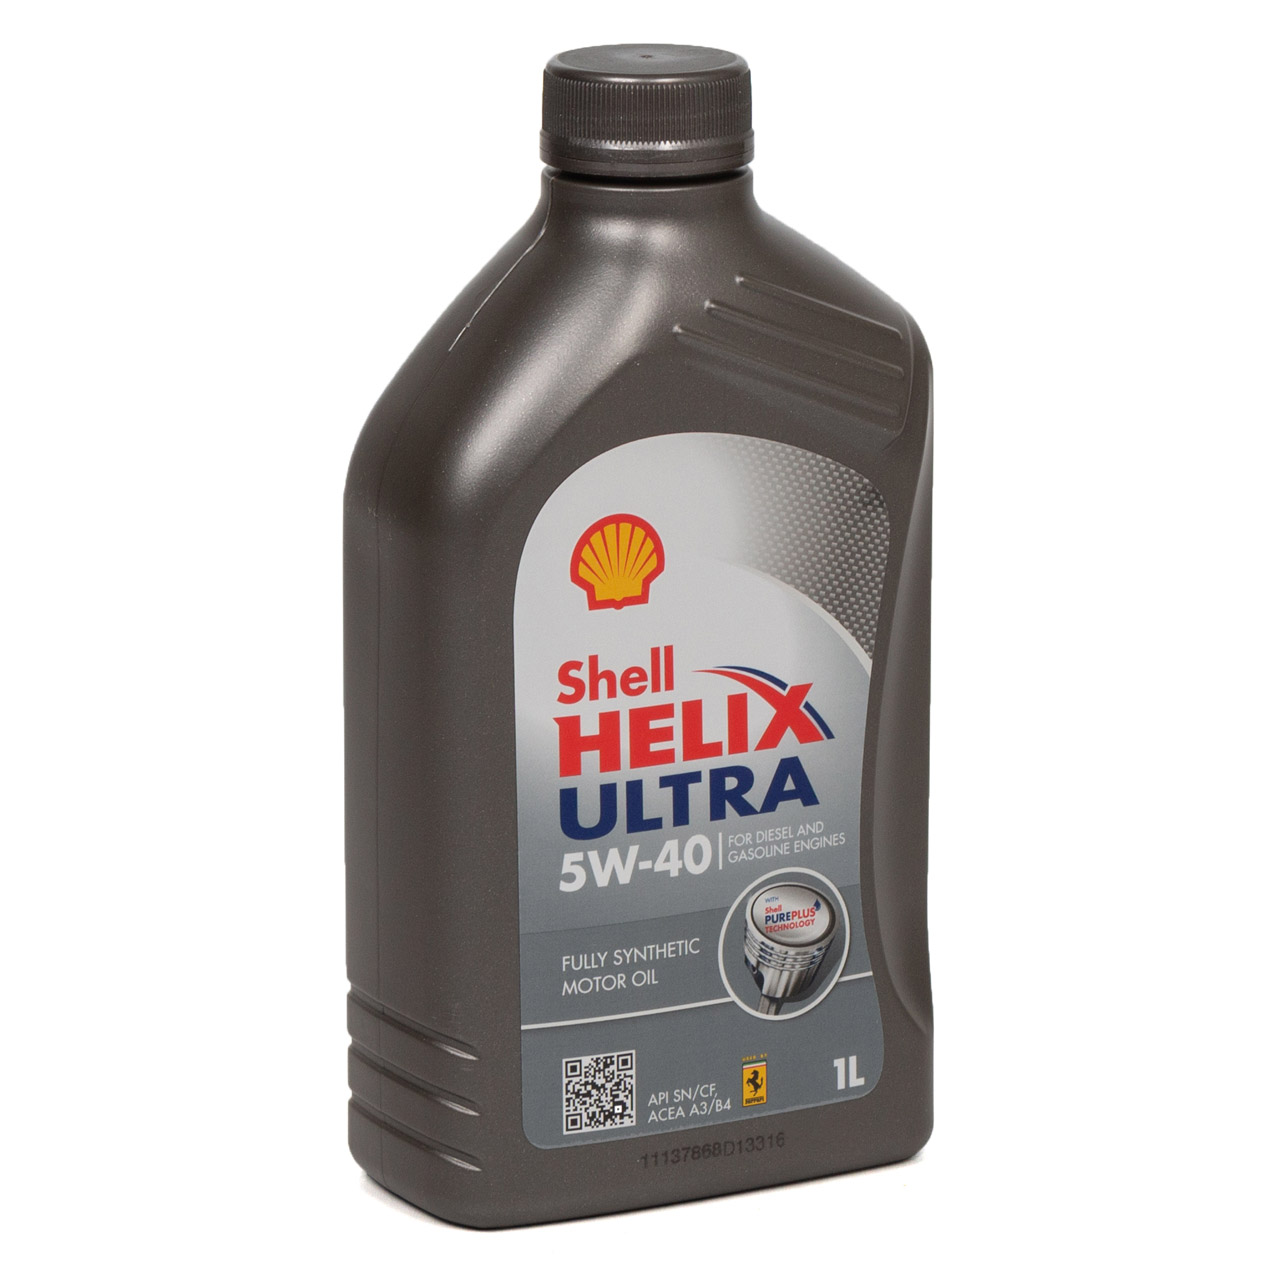 SHELL Motoröl Öl HELIX ULTRA 5W-40 5W40 VW 502/505.00 MB 226/229.5 - 5L 5 Liter